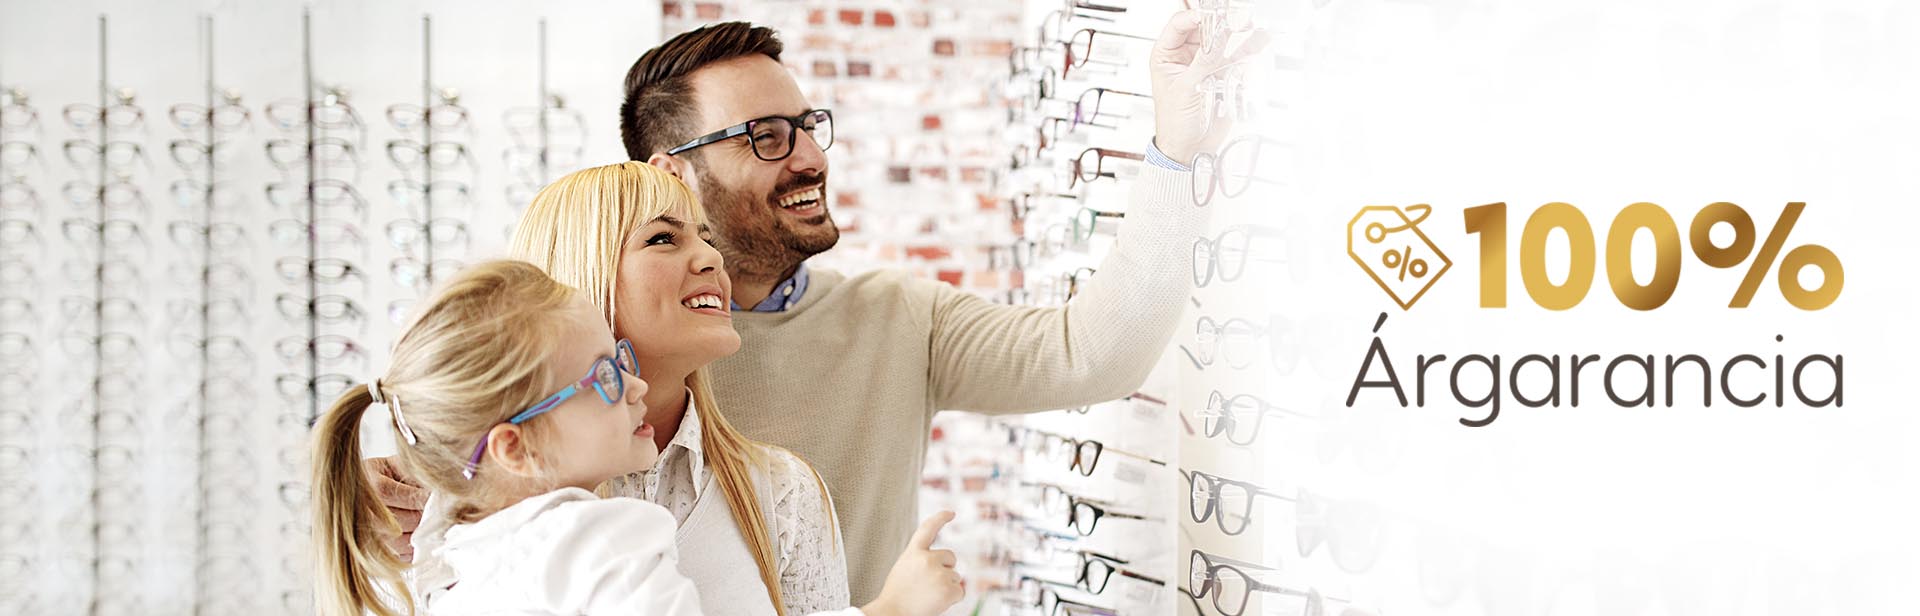 Optikshop szemüvegek, kontaktlencsék, napszemüvegek, keretek akciós áron - Optikshop